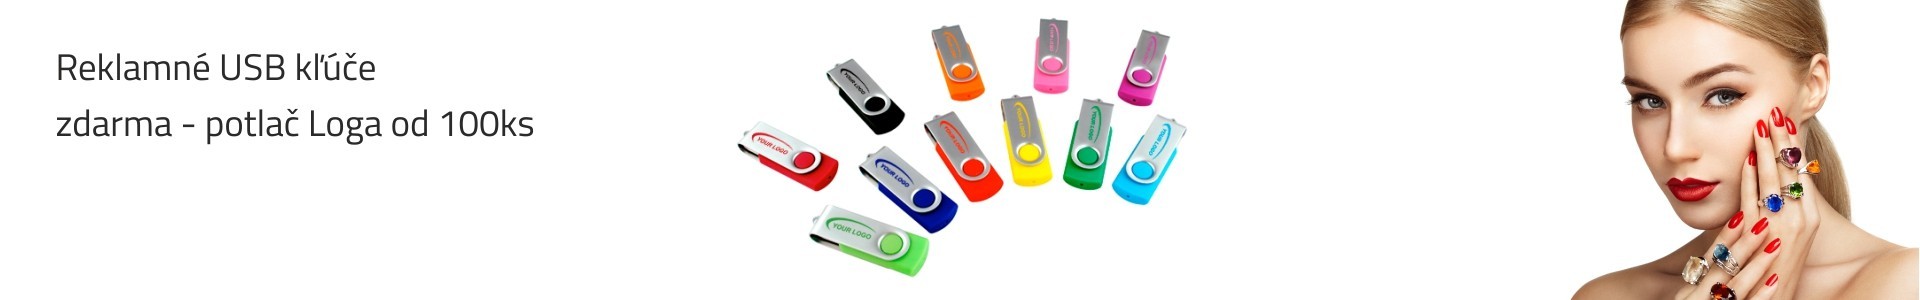 Reklamné USB kľúče + Farebná Potlač USB do 3 dní I Pc micro